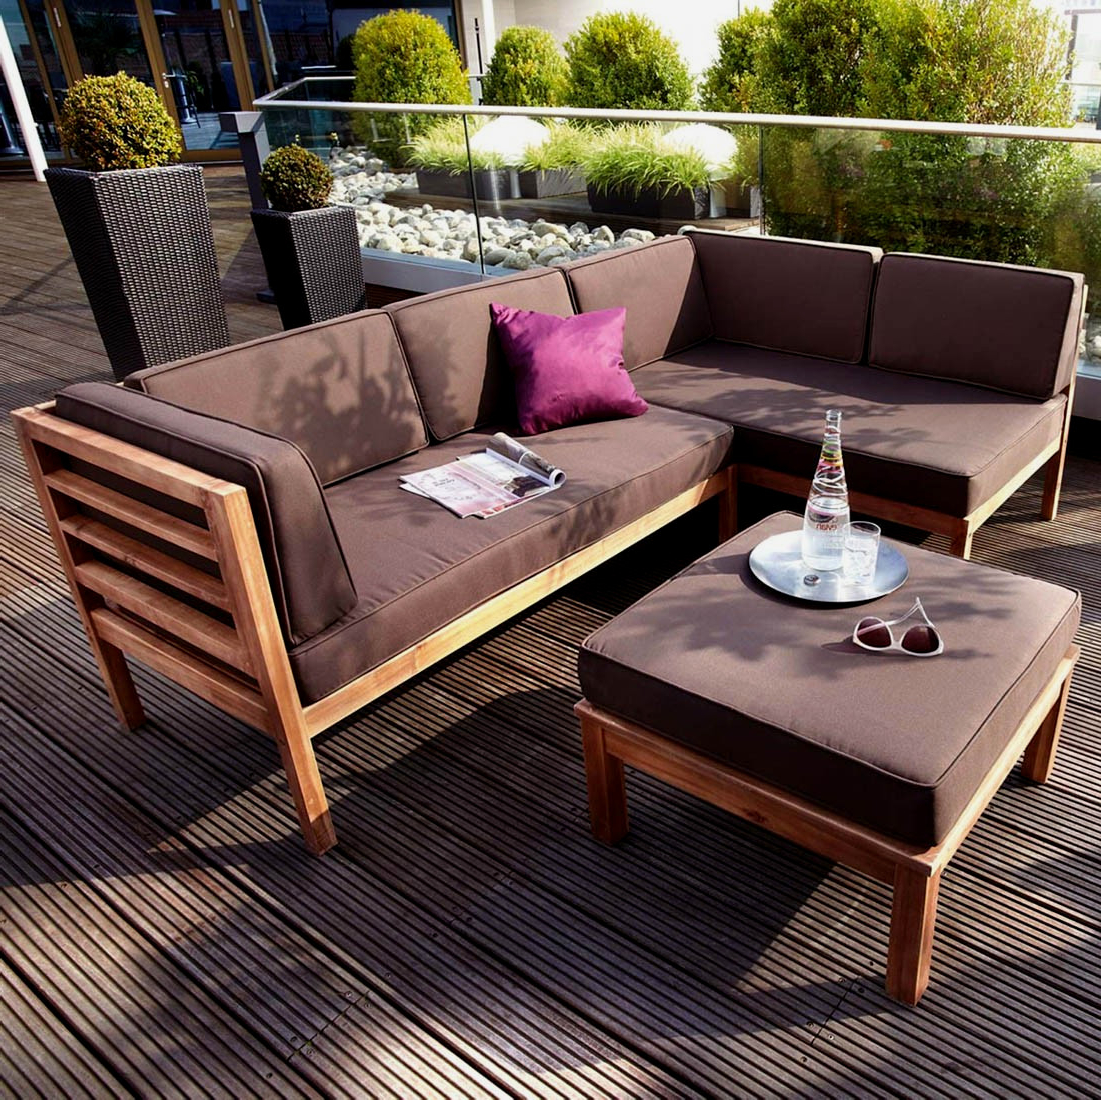 Gartenmöbel Lounge Schön Outdoor Lounge Möbel Selber Bauen – Wohn Design